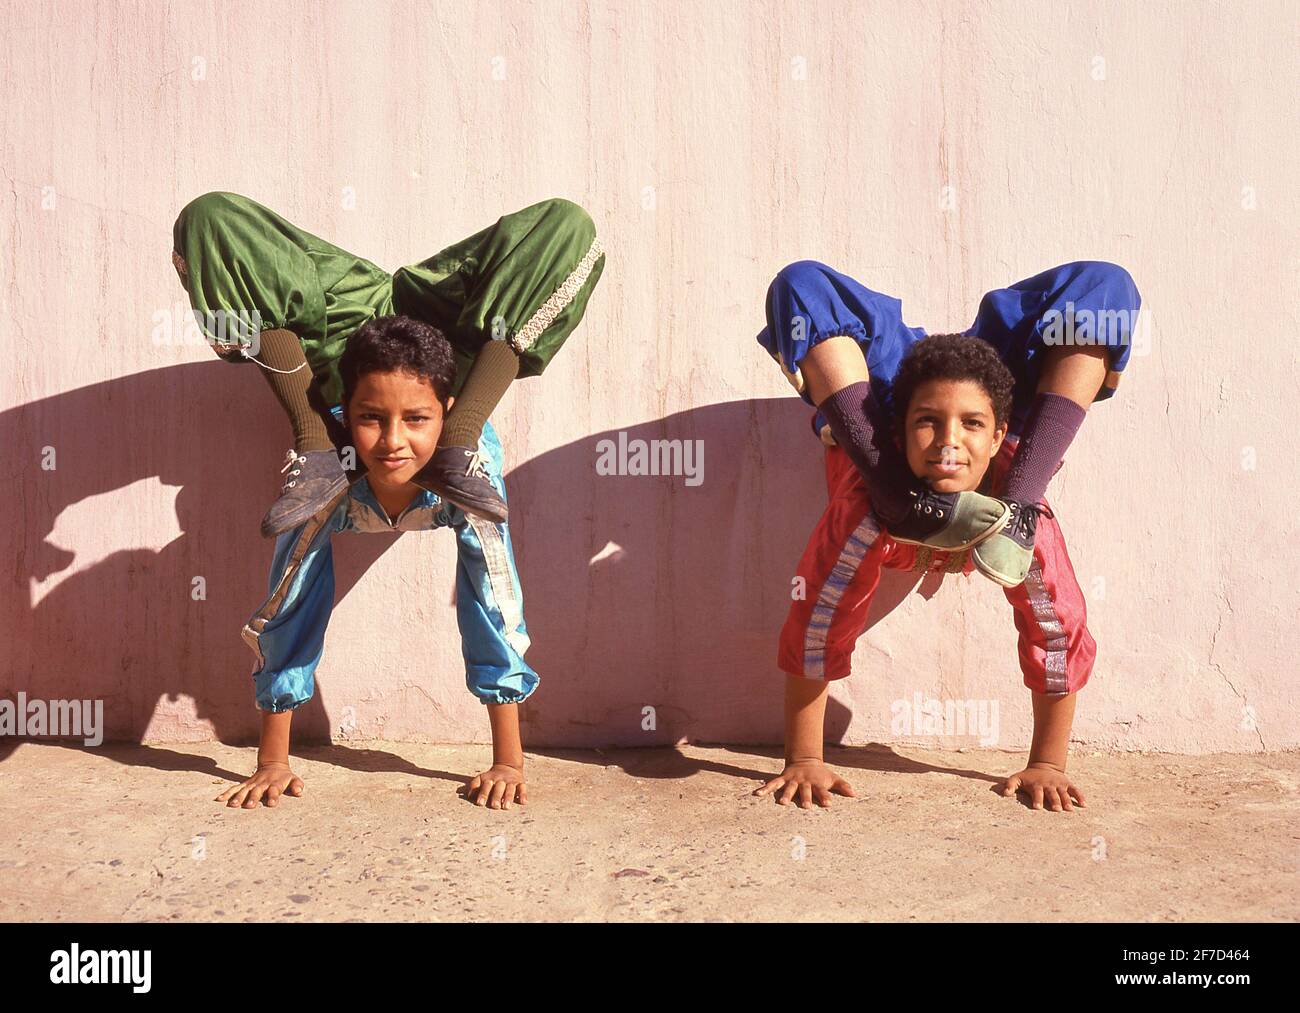 Exposition acrobatique de jeunes garçons au spectacle Fantasia, Agadir, région Souss-Massa-Draâ, Maroc Banque D'Images